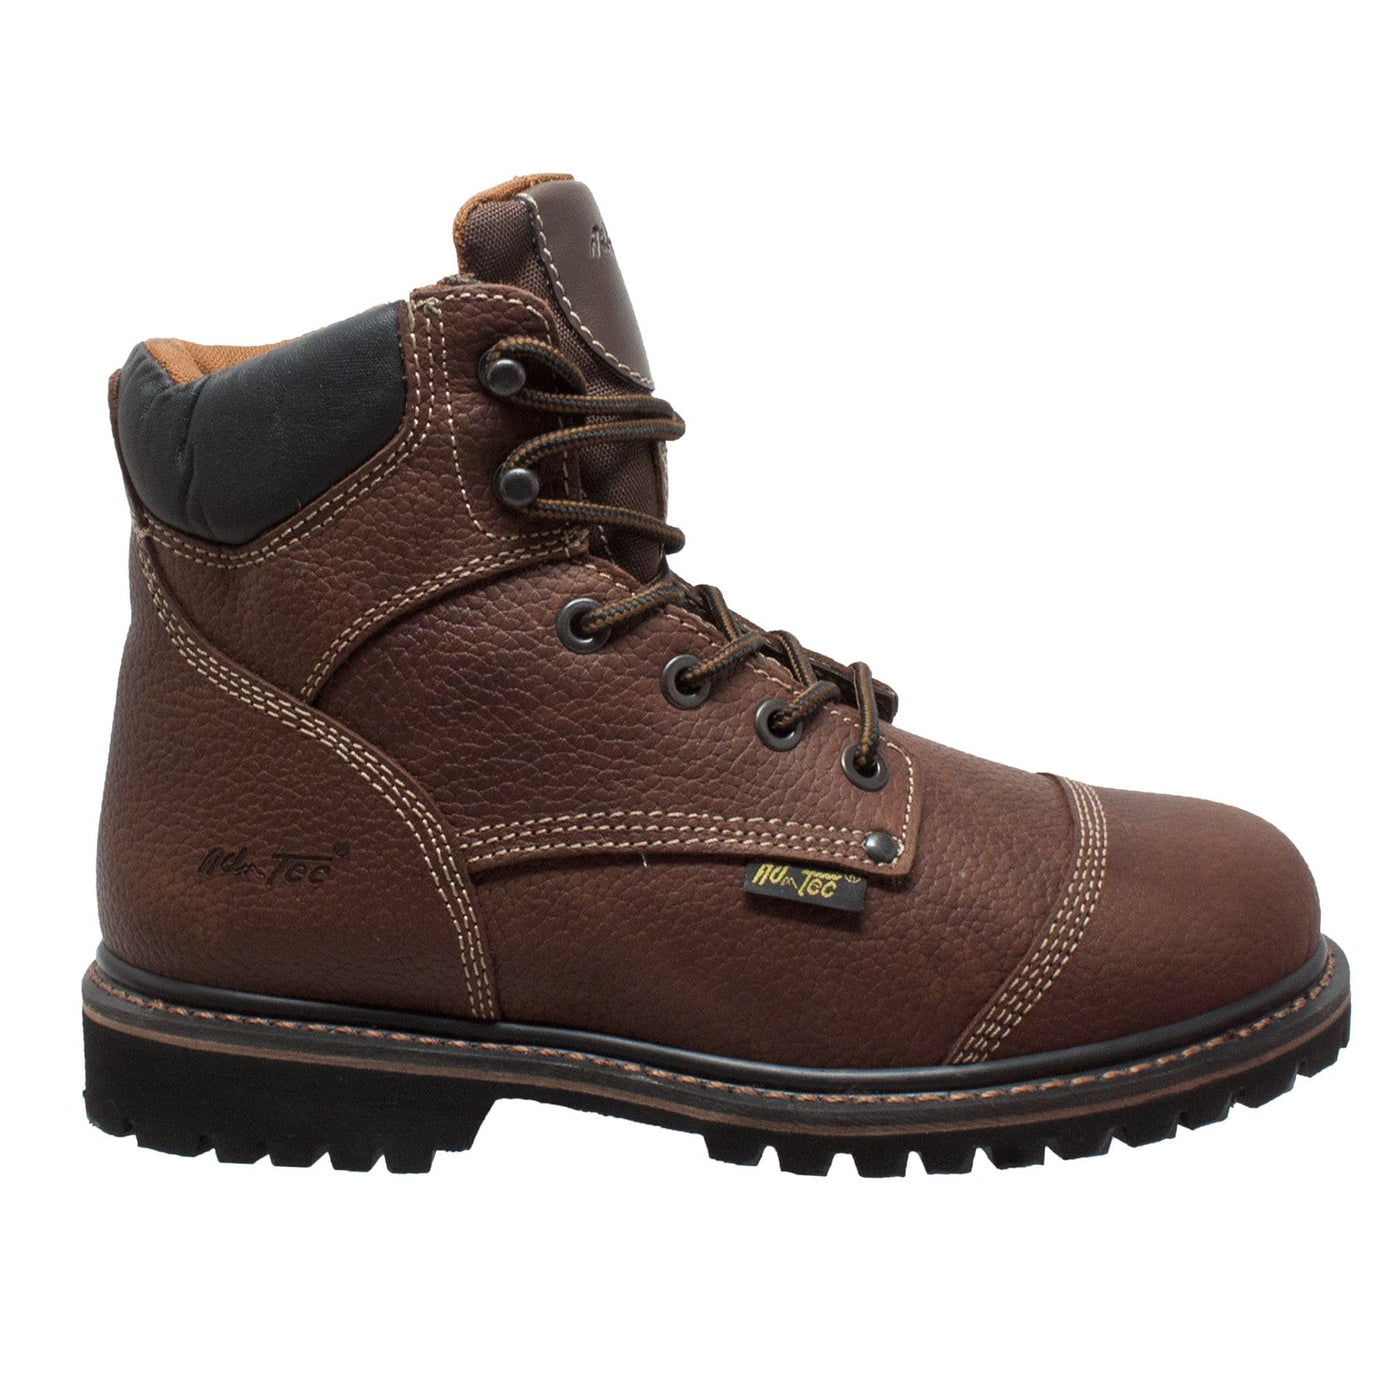 Men's 6"  Light Brown Comfort Work Boot - Shop Genuine Leather men & women's boots online | AdTecFootWear